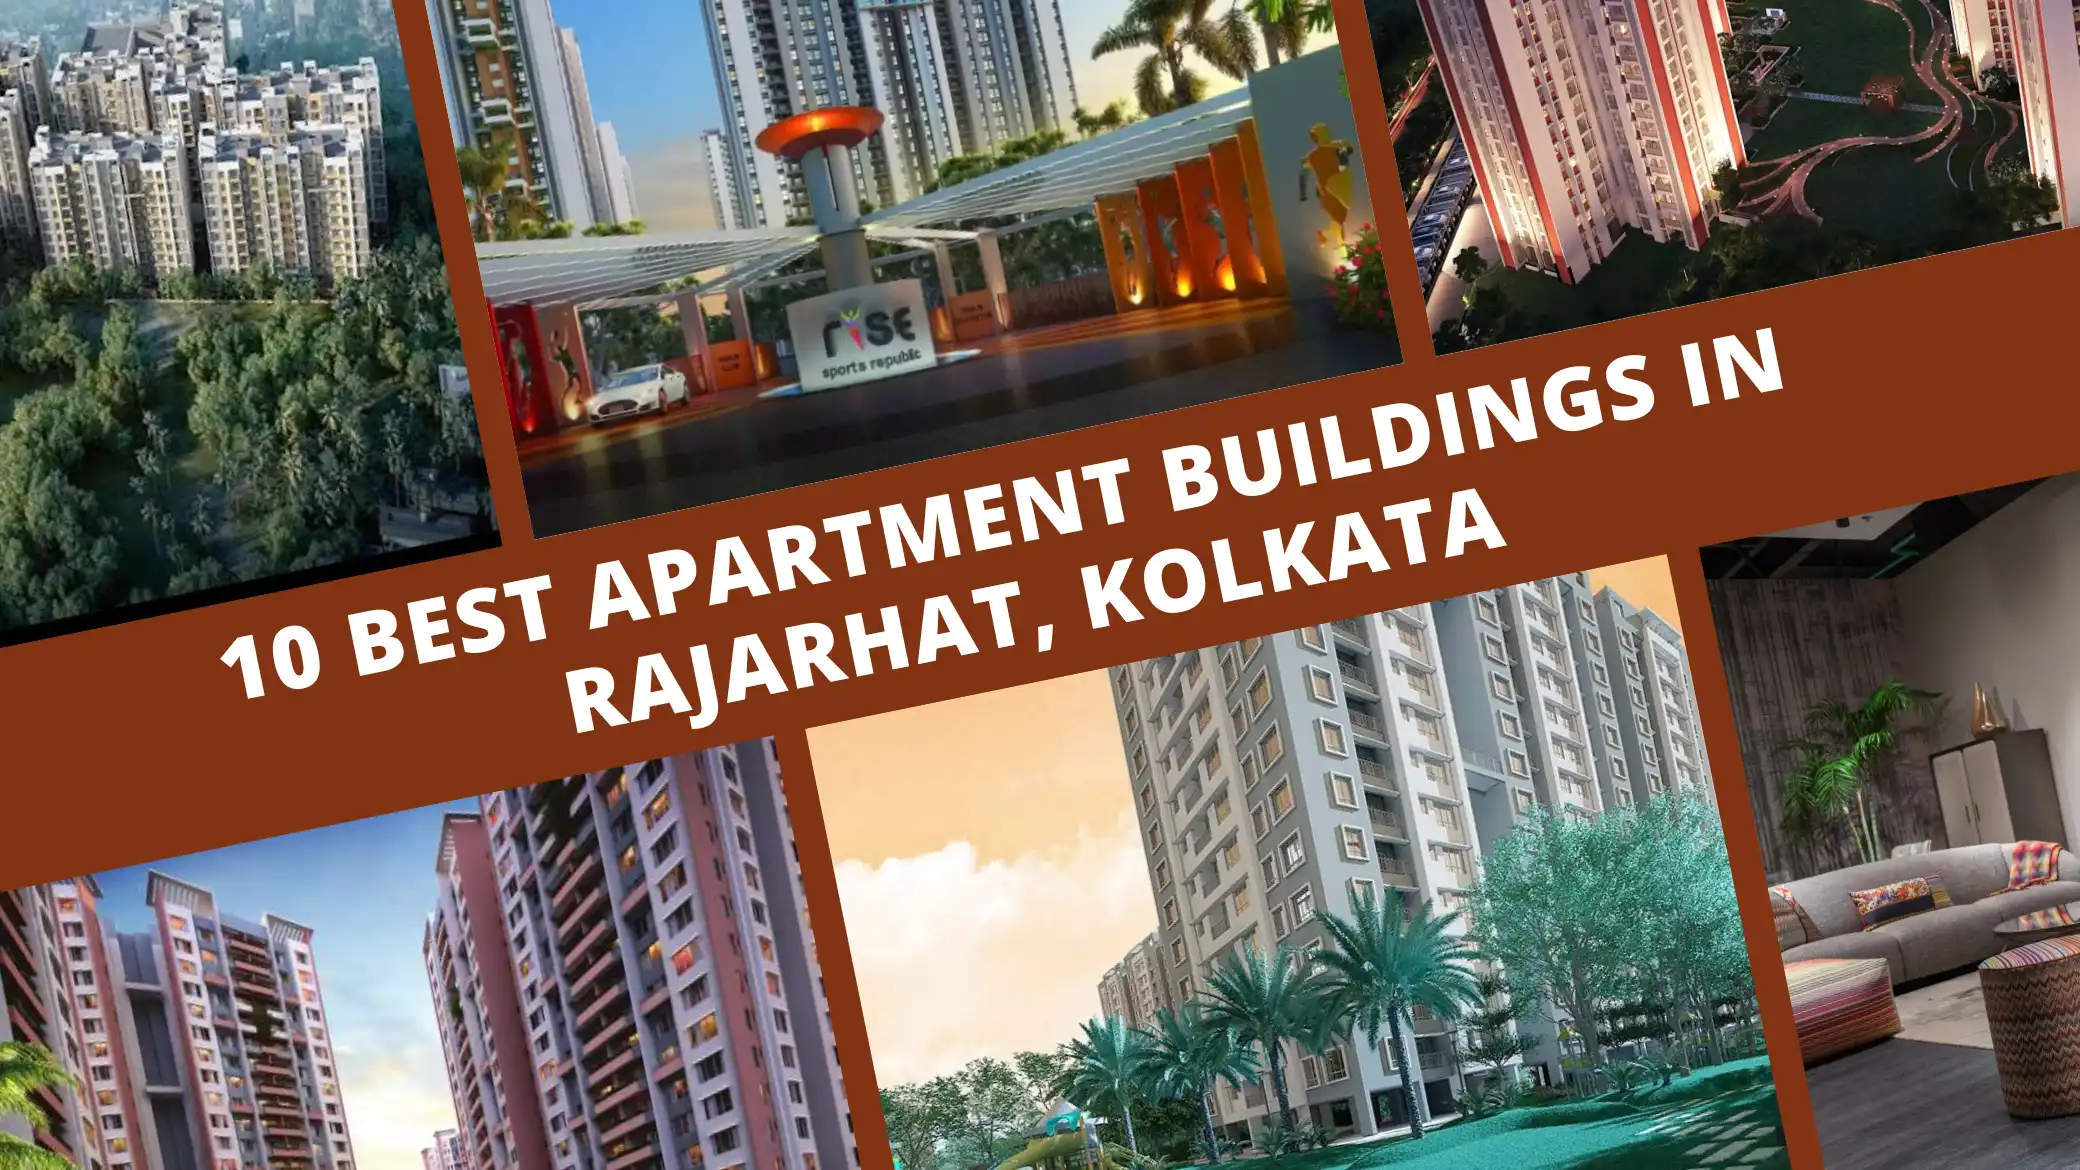 10 Best Apartment Buildings in Rajarhat, Kolkata